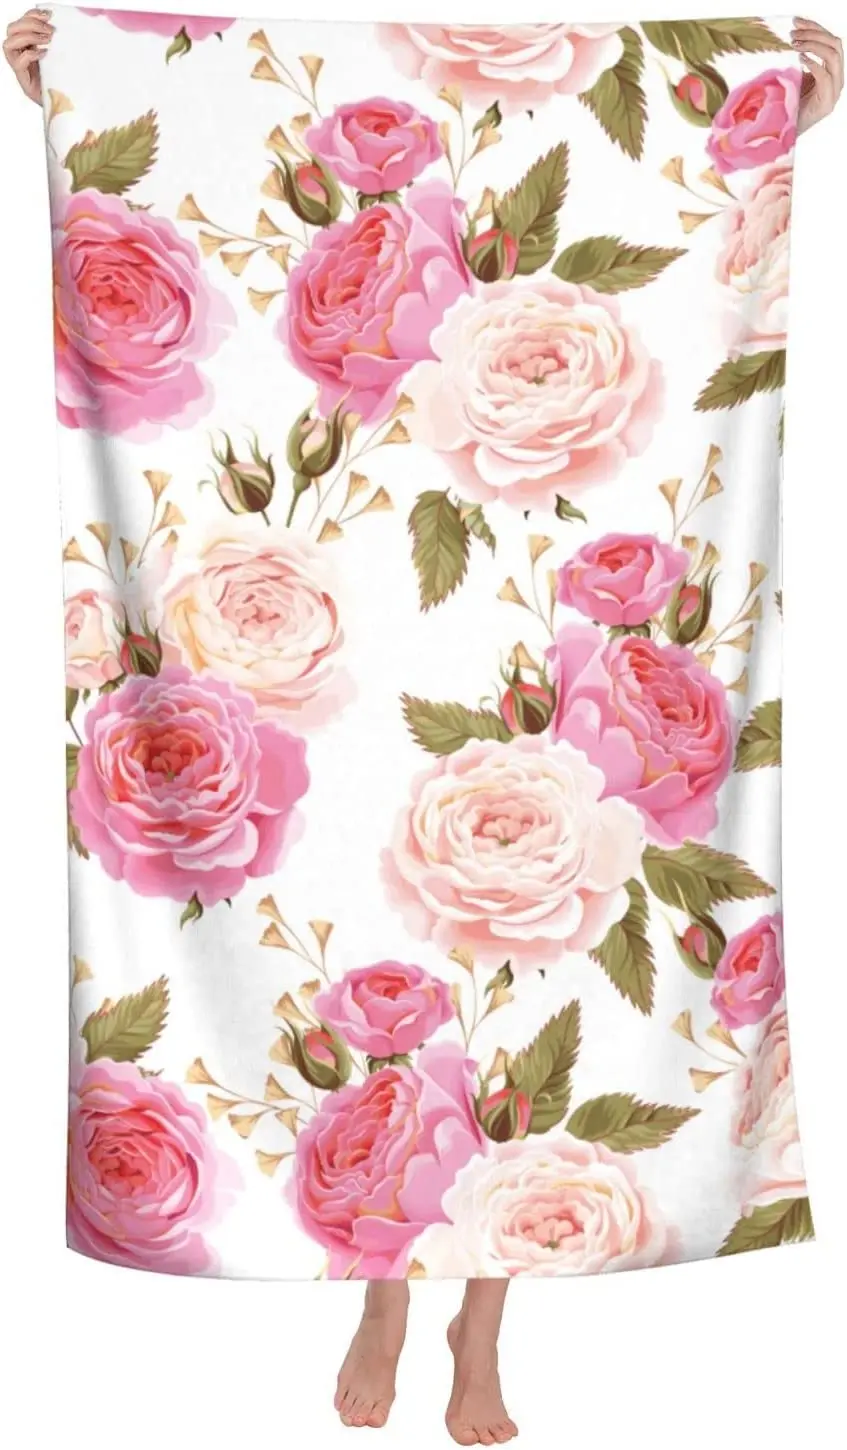 Плажна кърпа с рози, Акварел, разноцветни розови рози с листа на бял банном кърпа, защитено от пясък, Красива плажна кърпа с цветен модел . ' - ' . 0